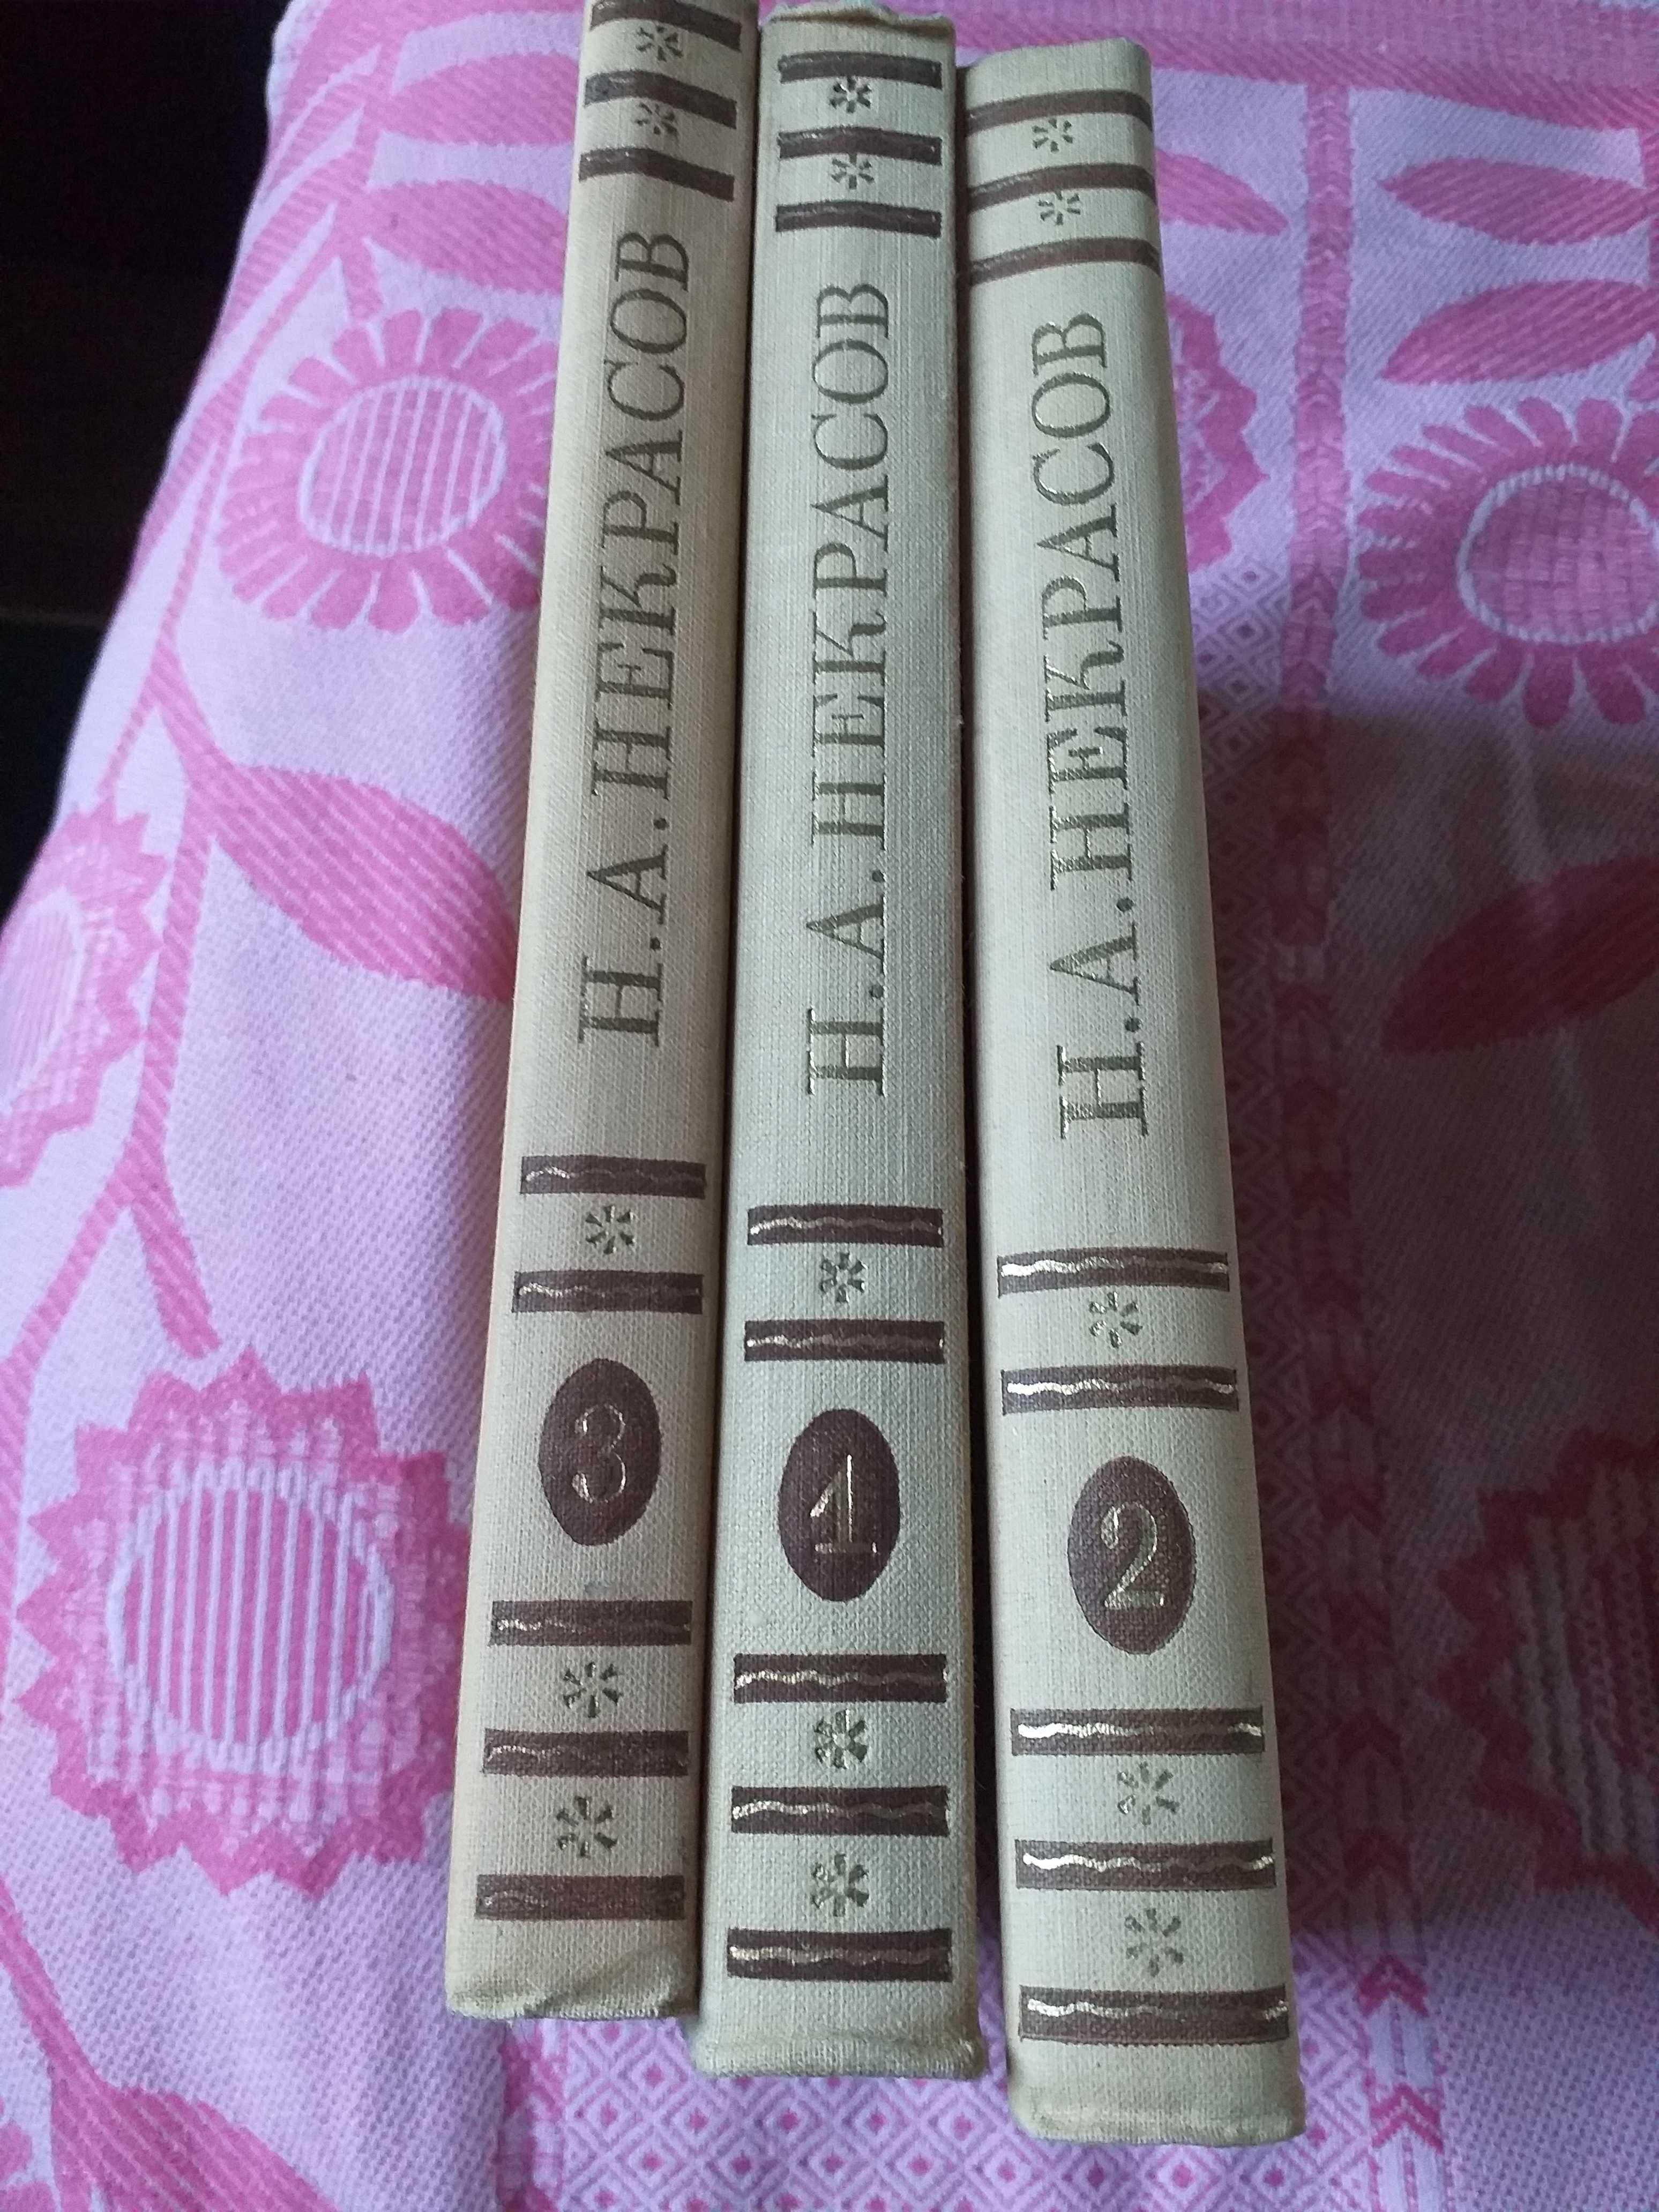 Книга, три тома Н.А.Некрасова, 1959 год.